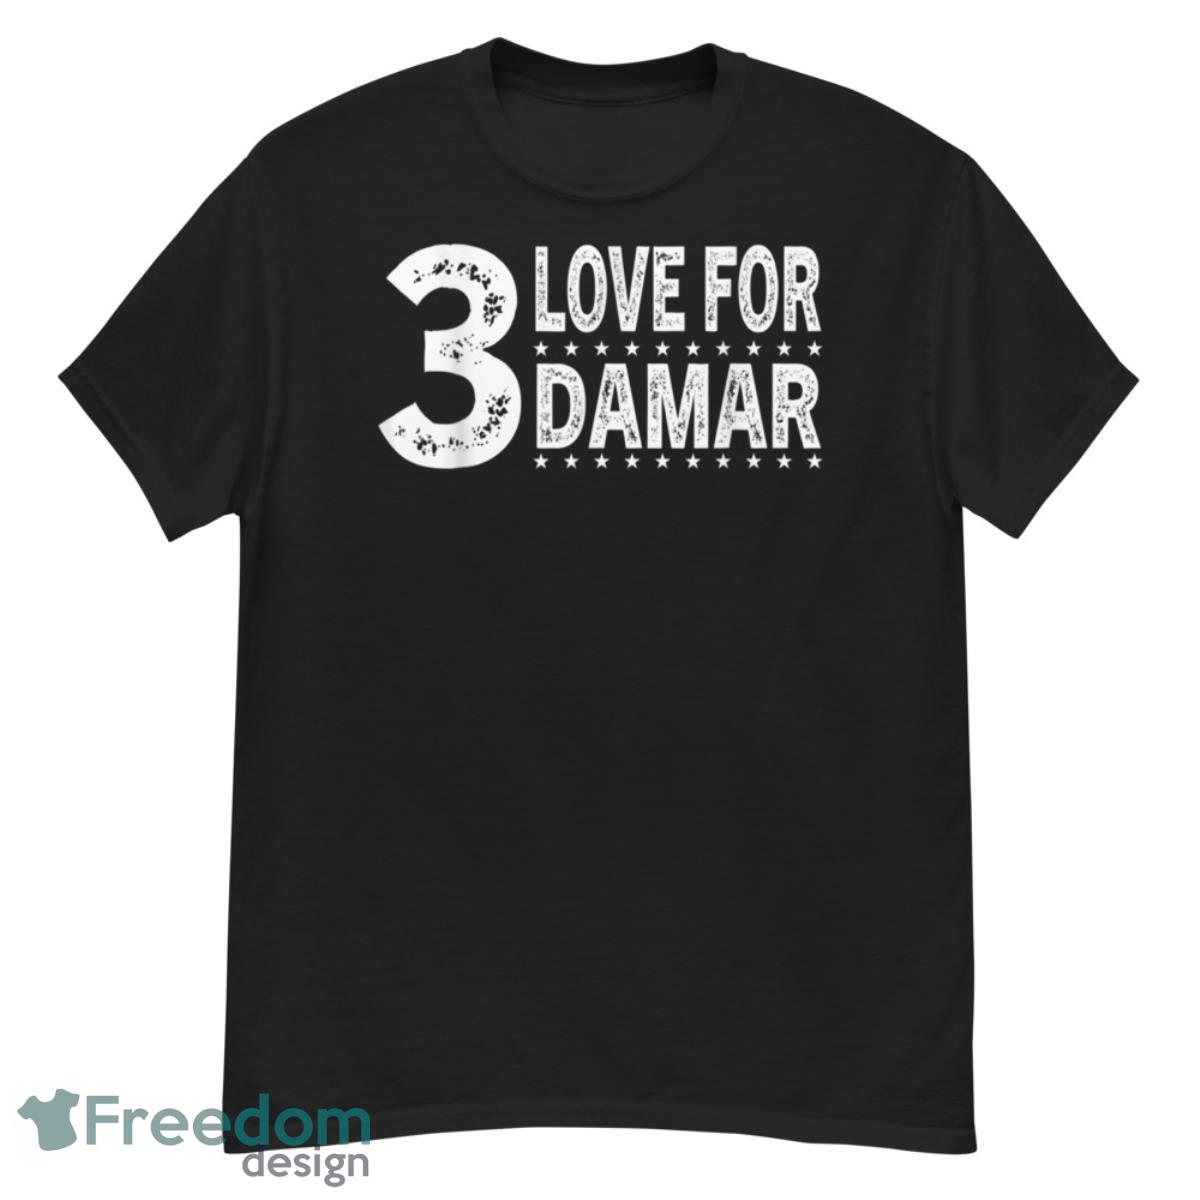 Love for Damar 3 T-Shirt - G500 Men’s Classic T-Shirt